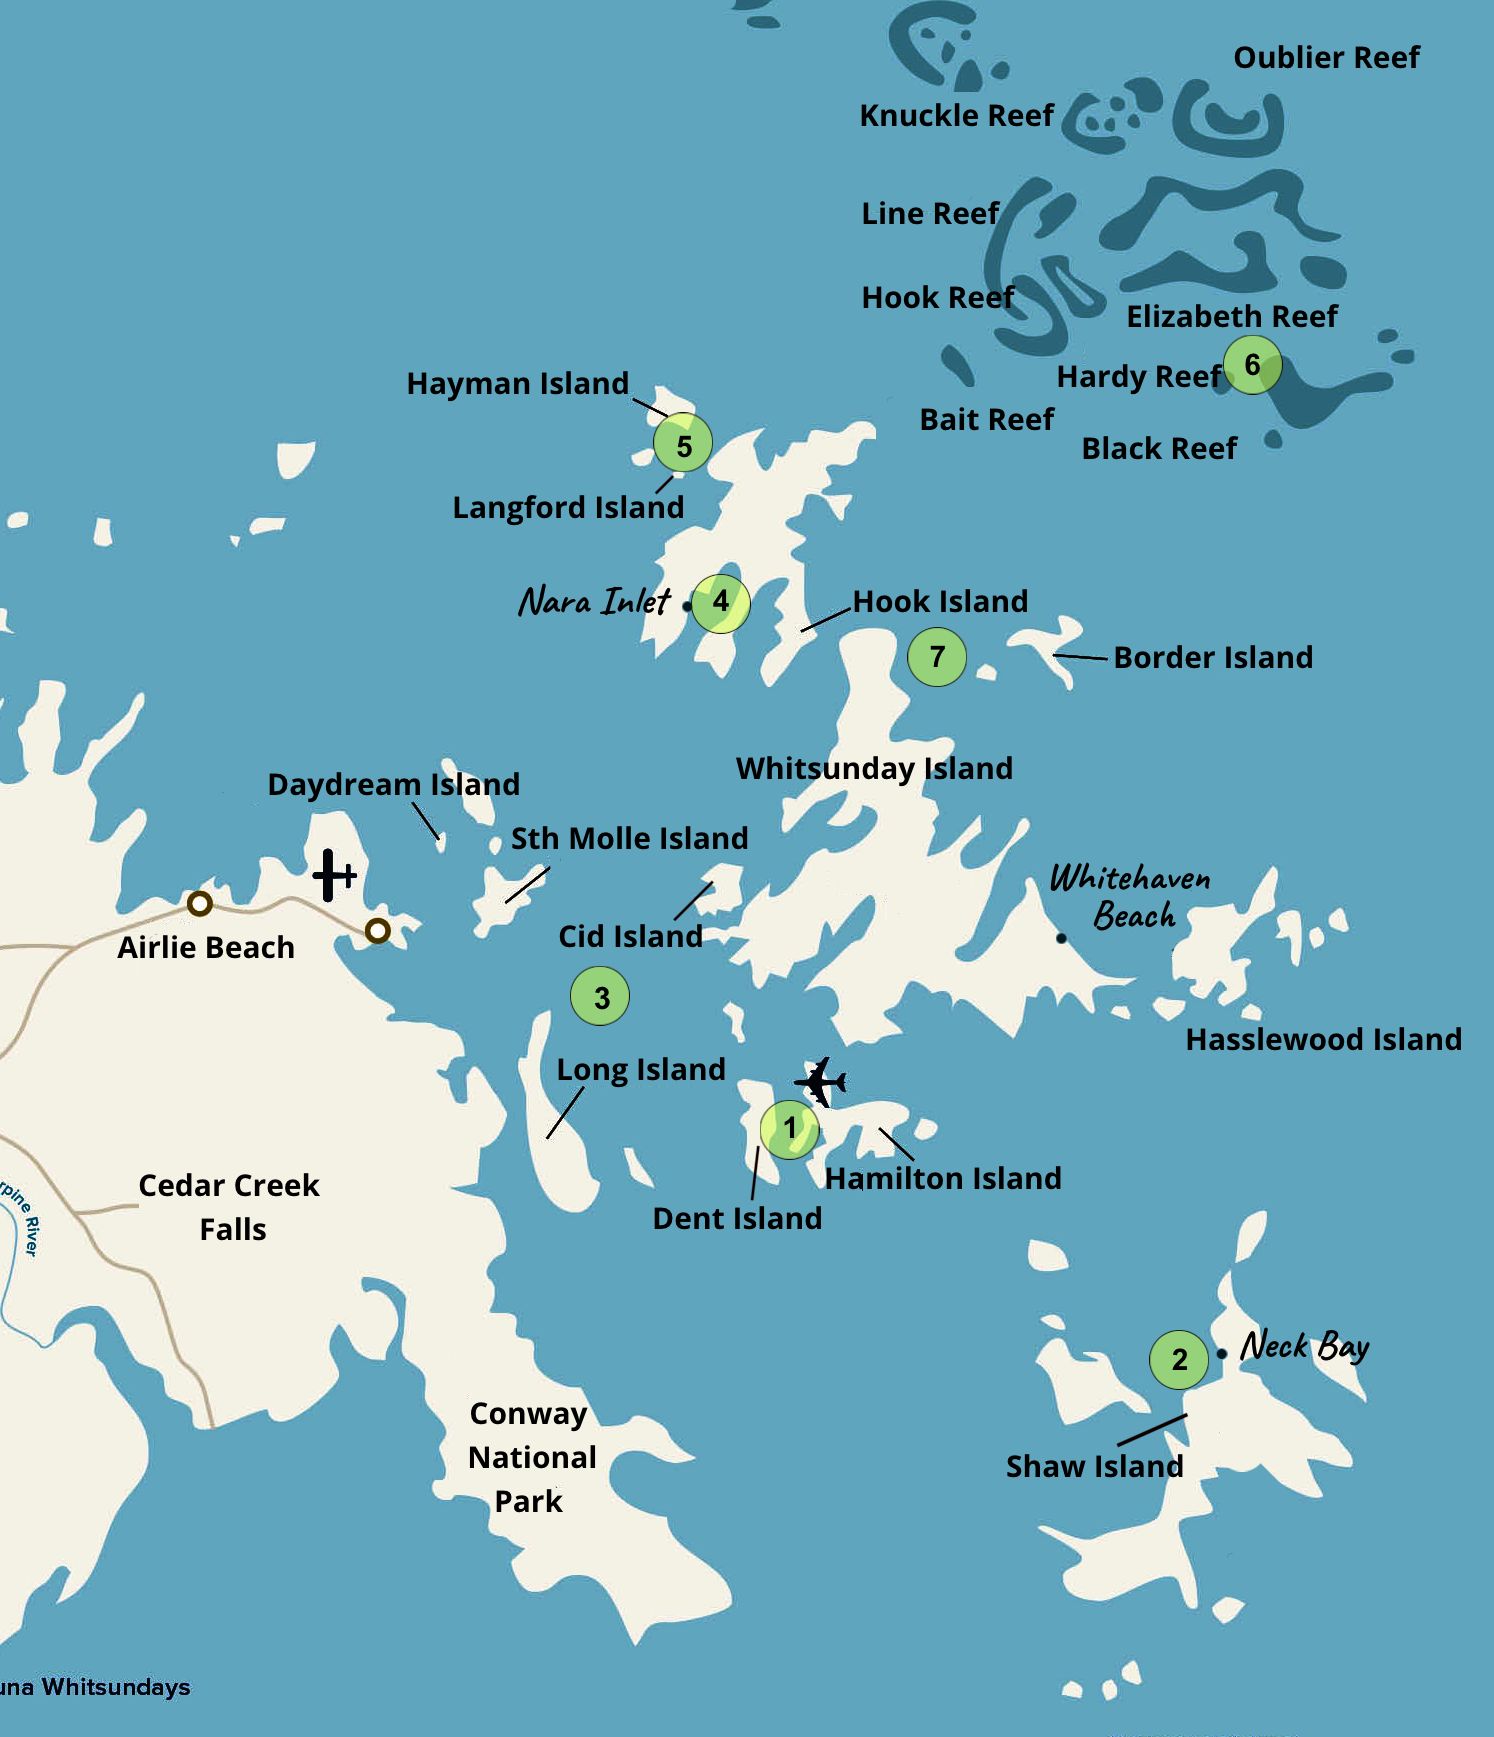 Whitsundays-Map-FINAL - Oneworld Charters